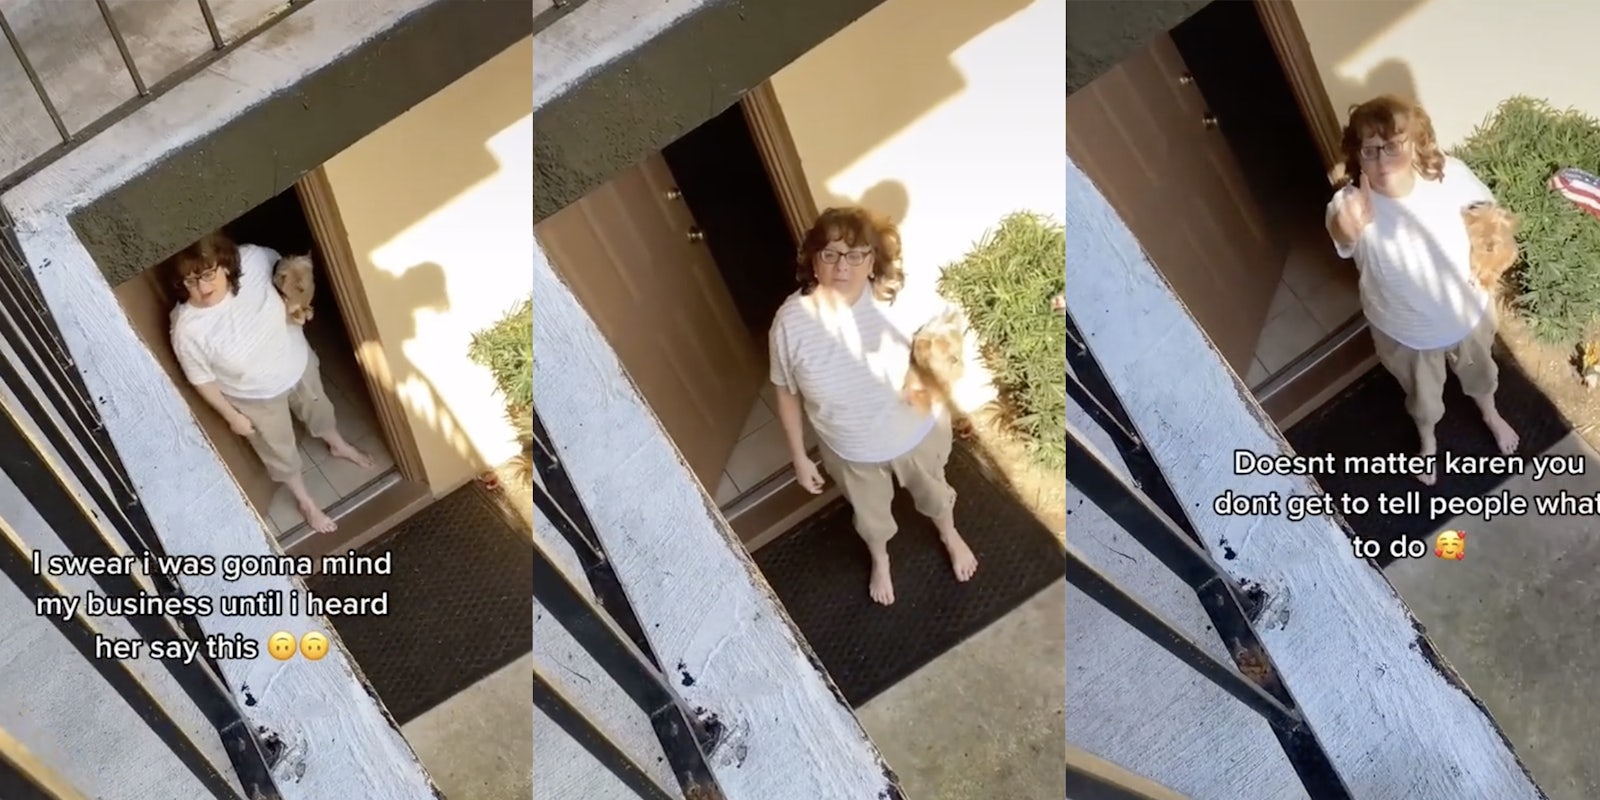 Racist 'Karen' holding dog wags finger at neighbor.